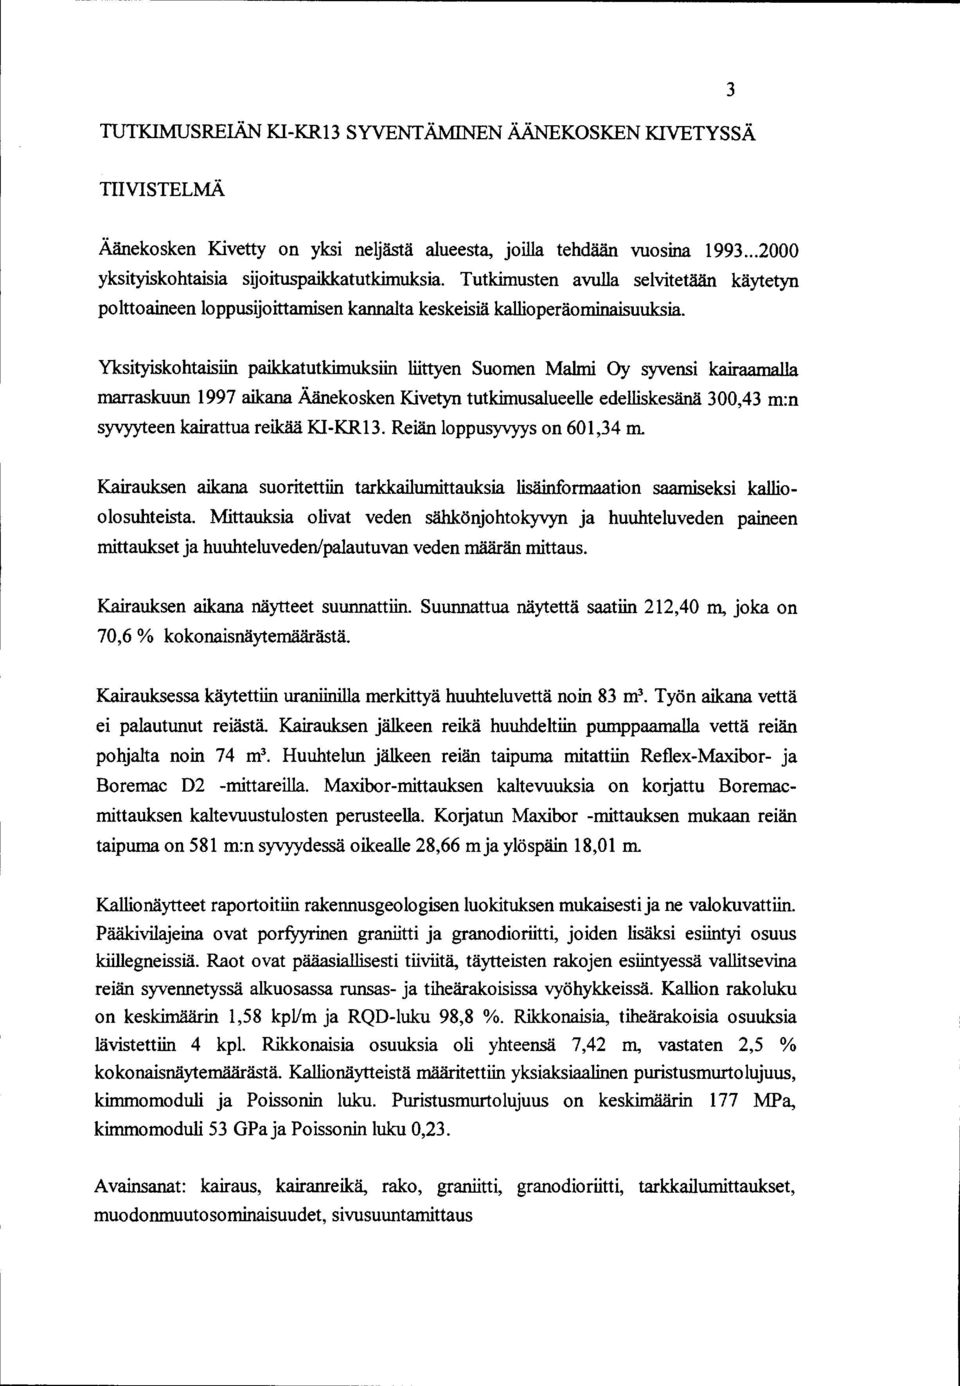 Yksityiskohtaisiin paikkatutkimuksiin liittyen Suomen Malmi Oy syvensi kairaamalla marraskuun 997 aikana Äänekosken Kivetyn tutkimusalueelle edelliskesänä 300,43 m:n syvyyteen kairattua reikää KI-KR3.